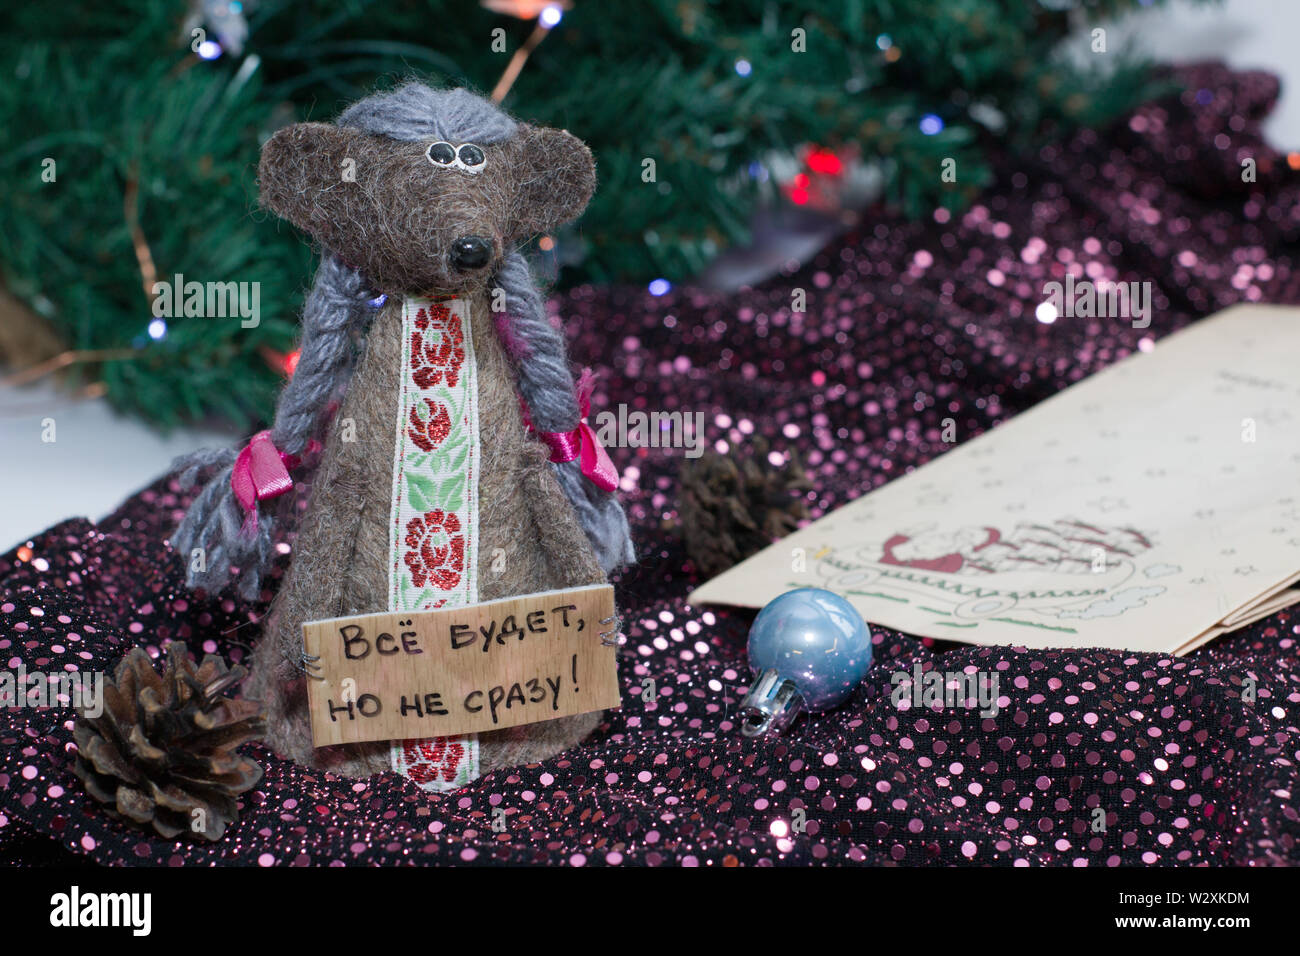 Neues Jahr Karte. Symbol für das Neue Jahr 2020 - Metall, silber Ratte. Süße Ratte mit Weihnachtsbaum dekoriert. Stockfoto